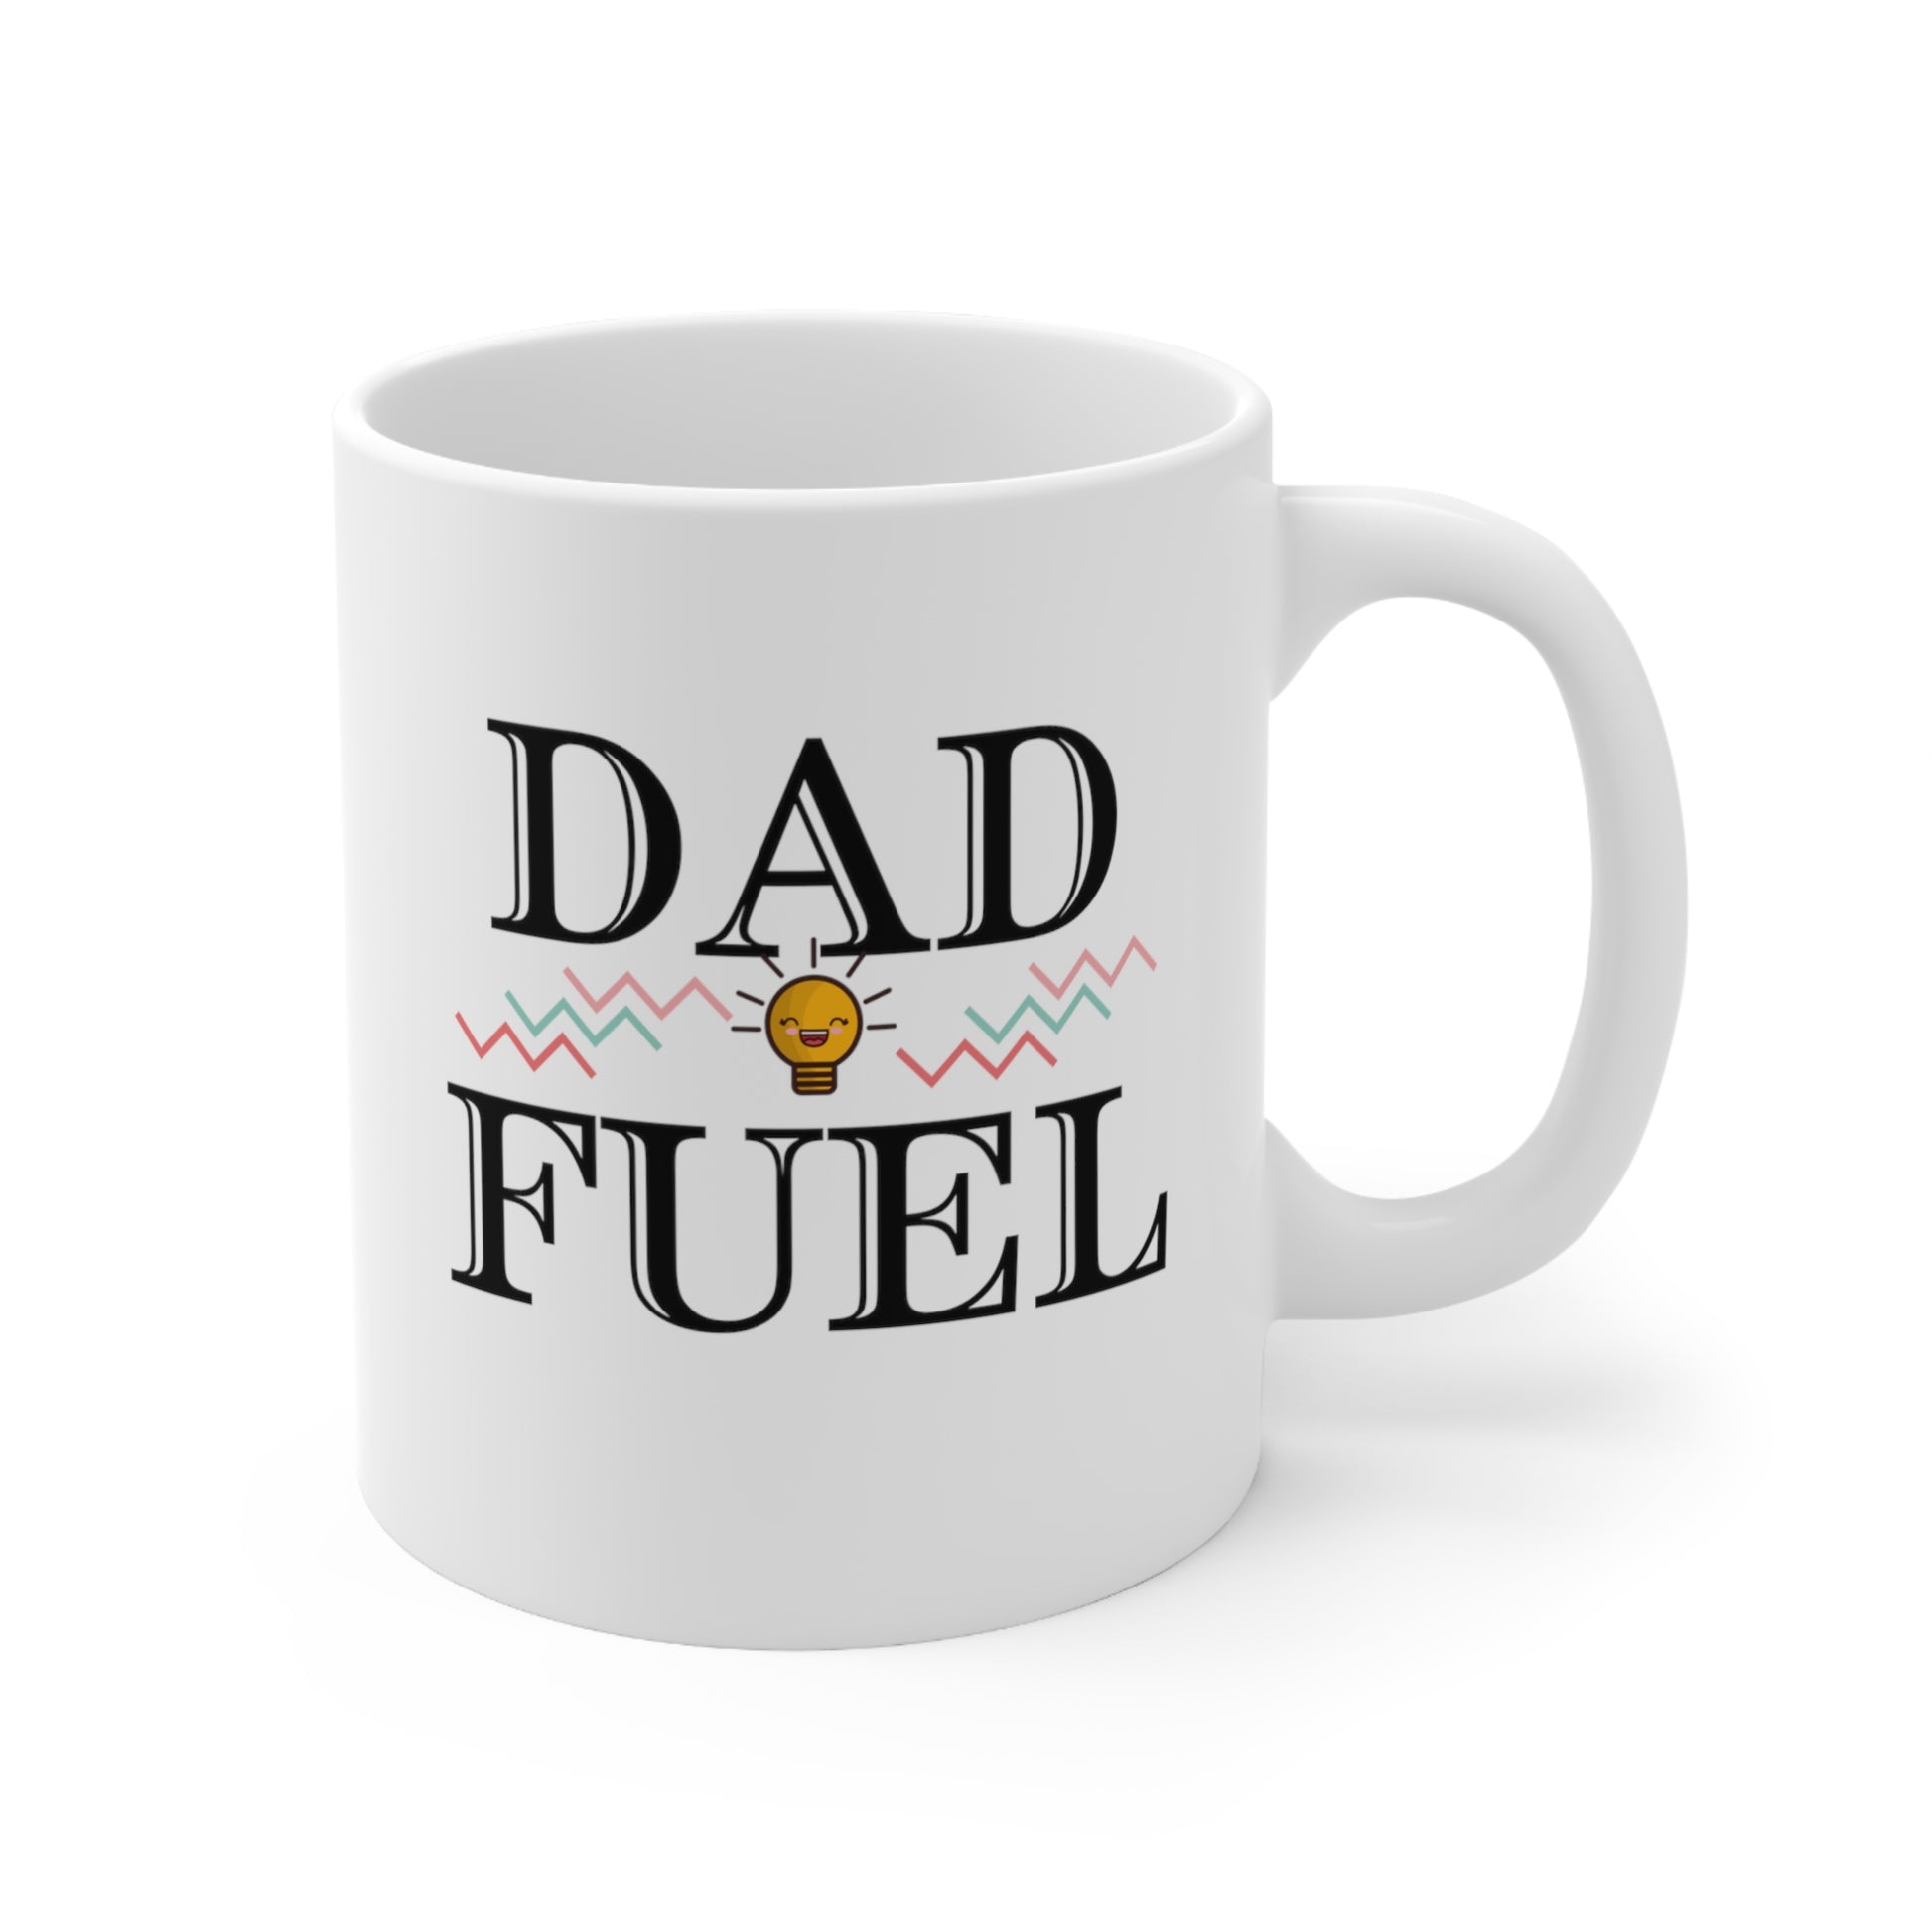 Dad Fuel Coffee Mug 11oz